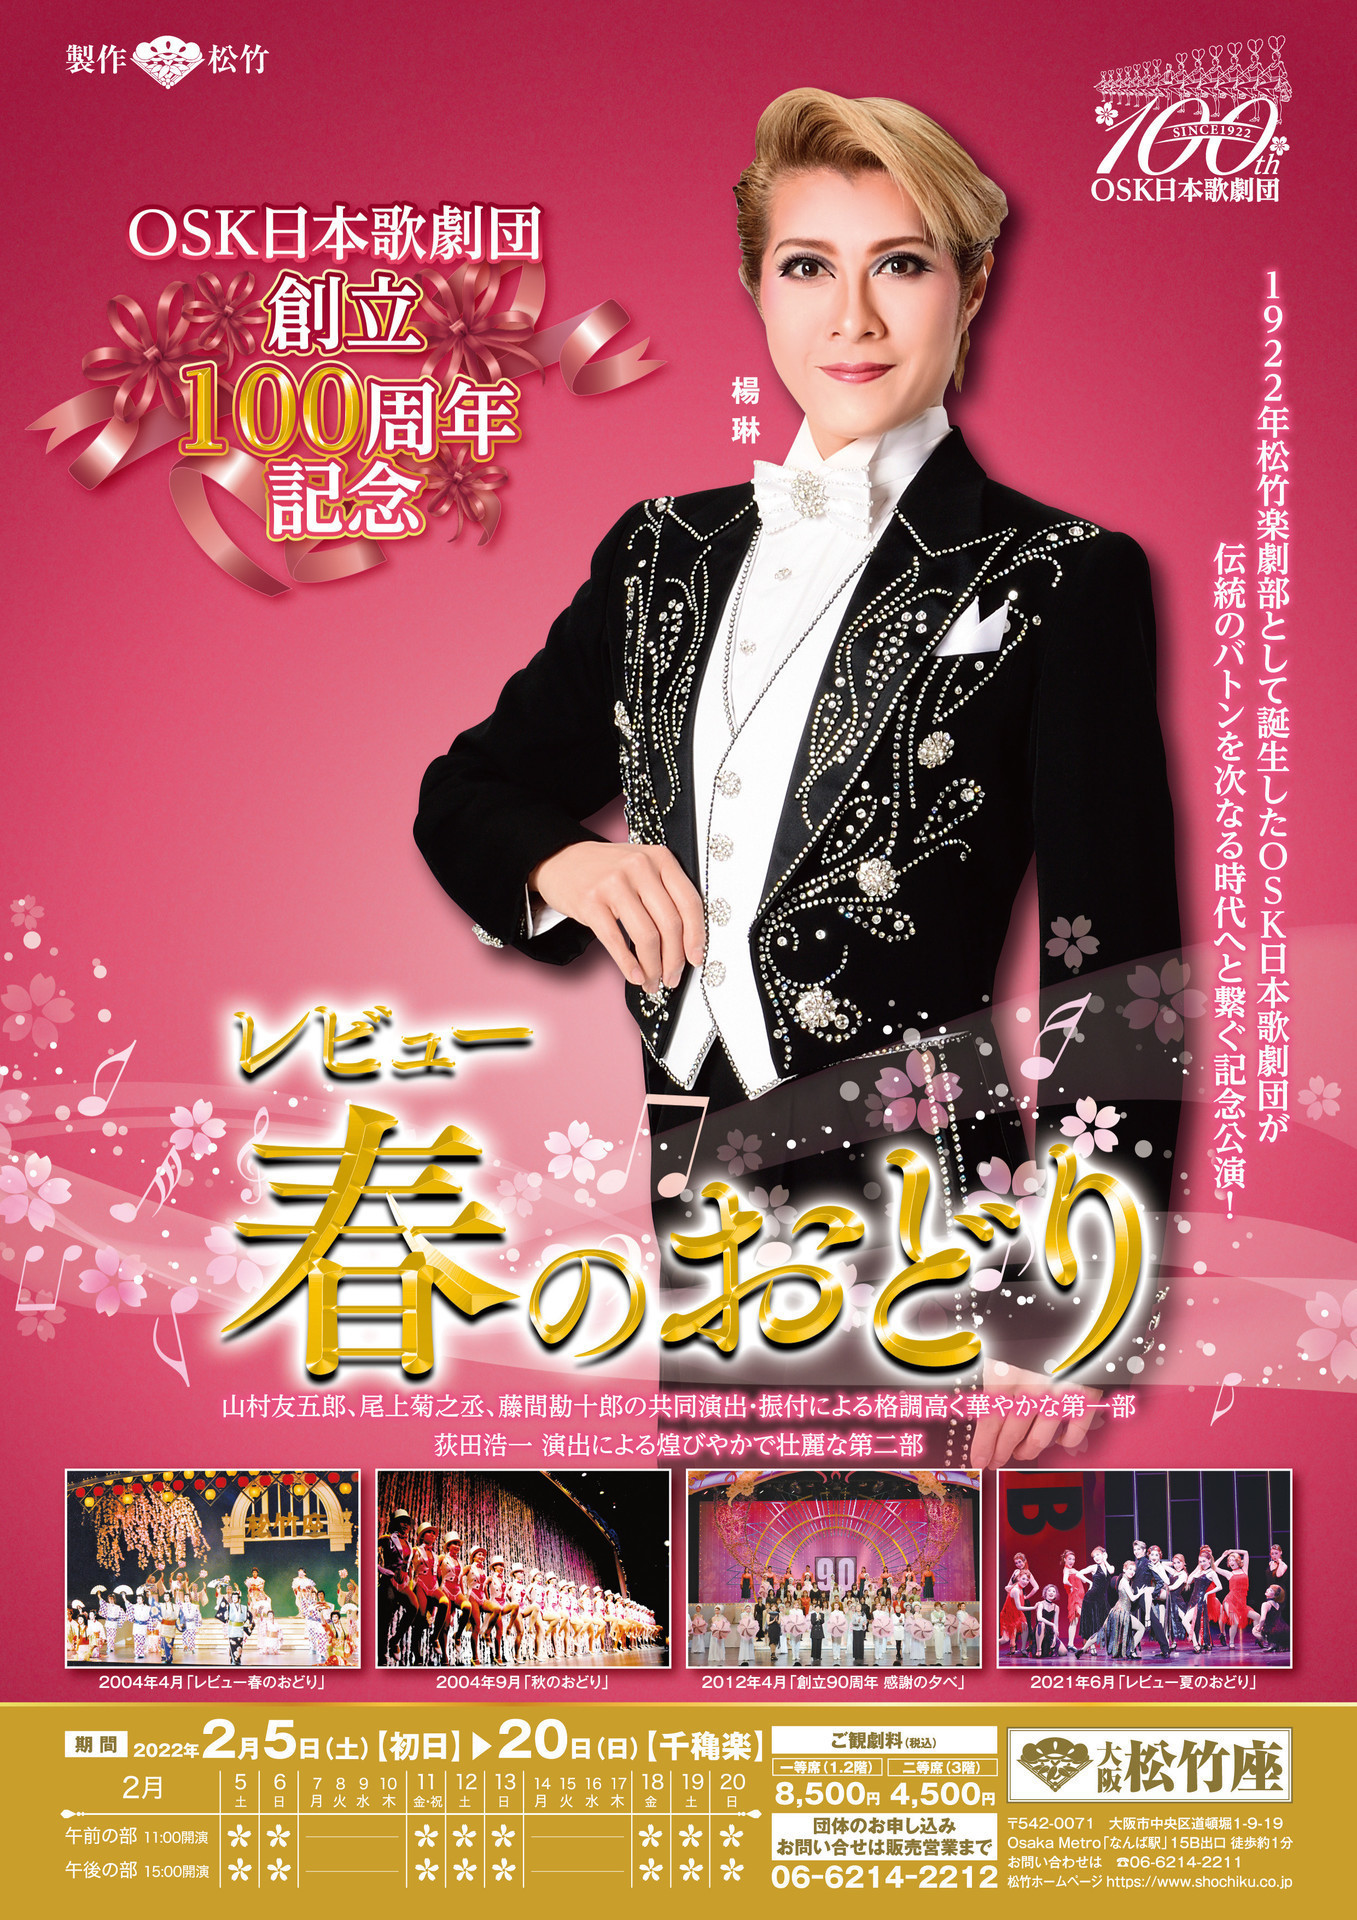 高品質 OSK日本歌劇団 DVD 創立90周年記念公演 REVUE レビュー春の 